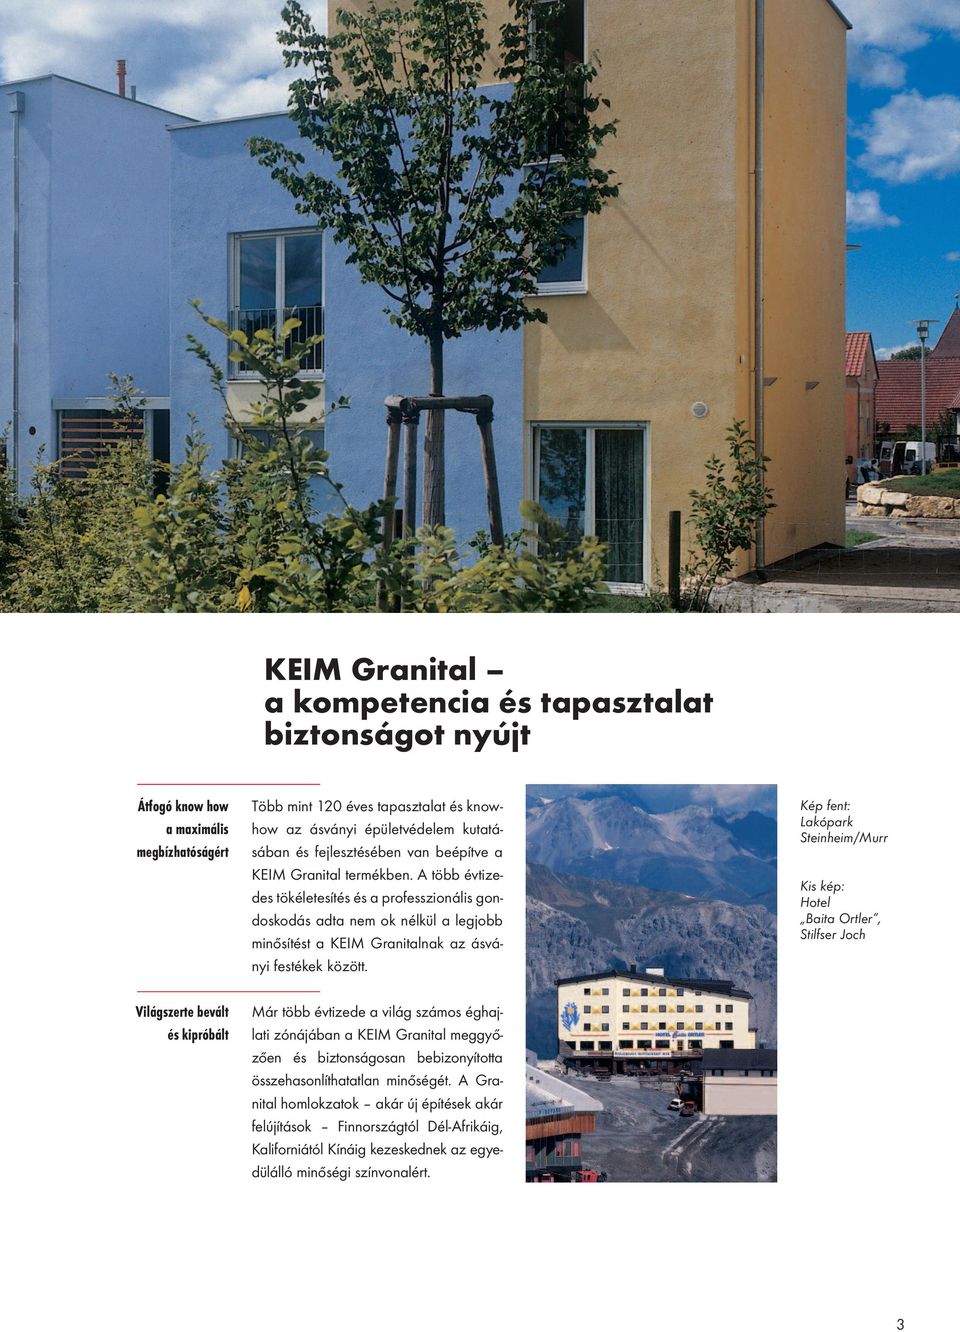 Kép fent: Lakópark Steinheim/Murr Kis kép: Hotel Baita Ortler, Stilfser Joch Világszerte bevált és kipróbált Már több évtizede a világ számos éghajlati zónájában a KEIM Granital meggyőzően és